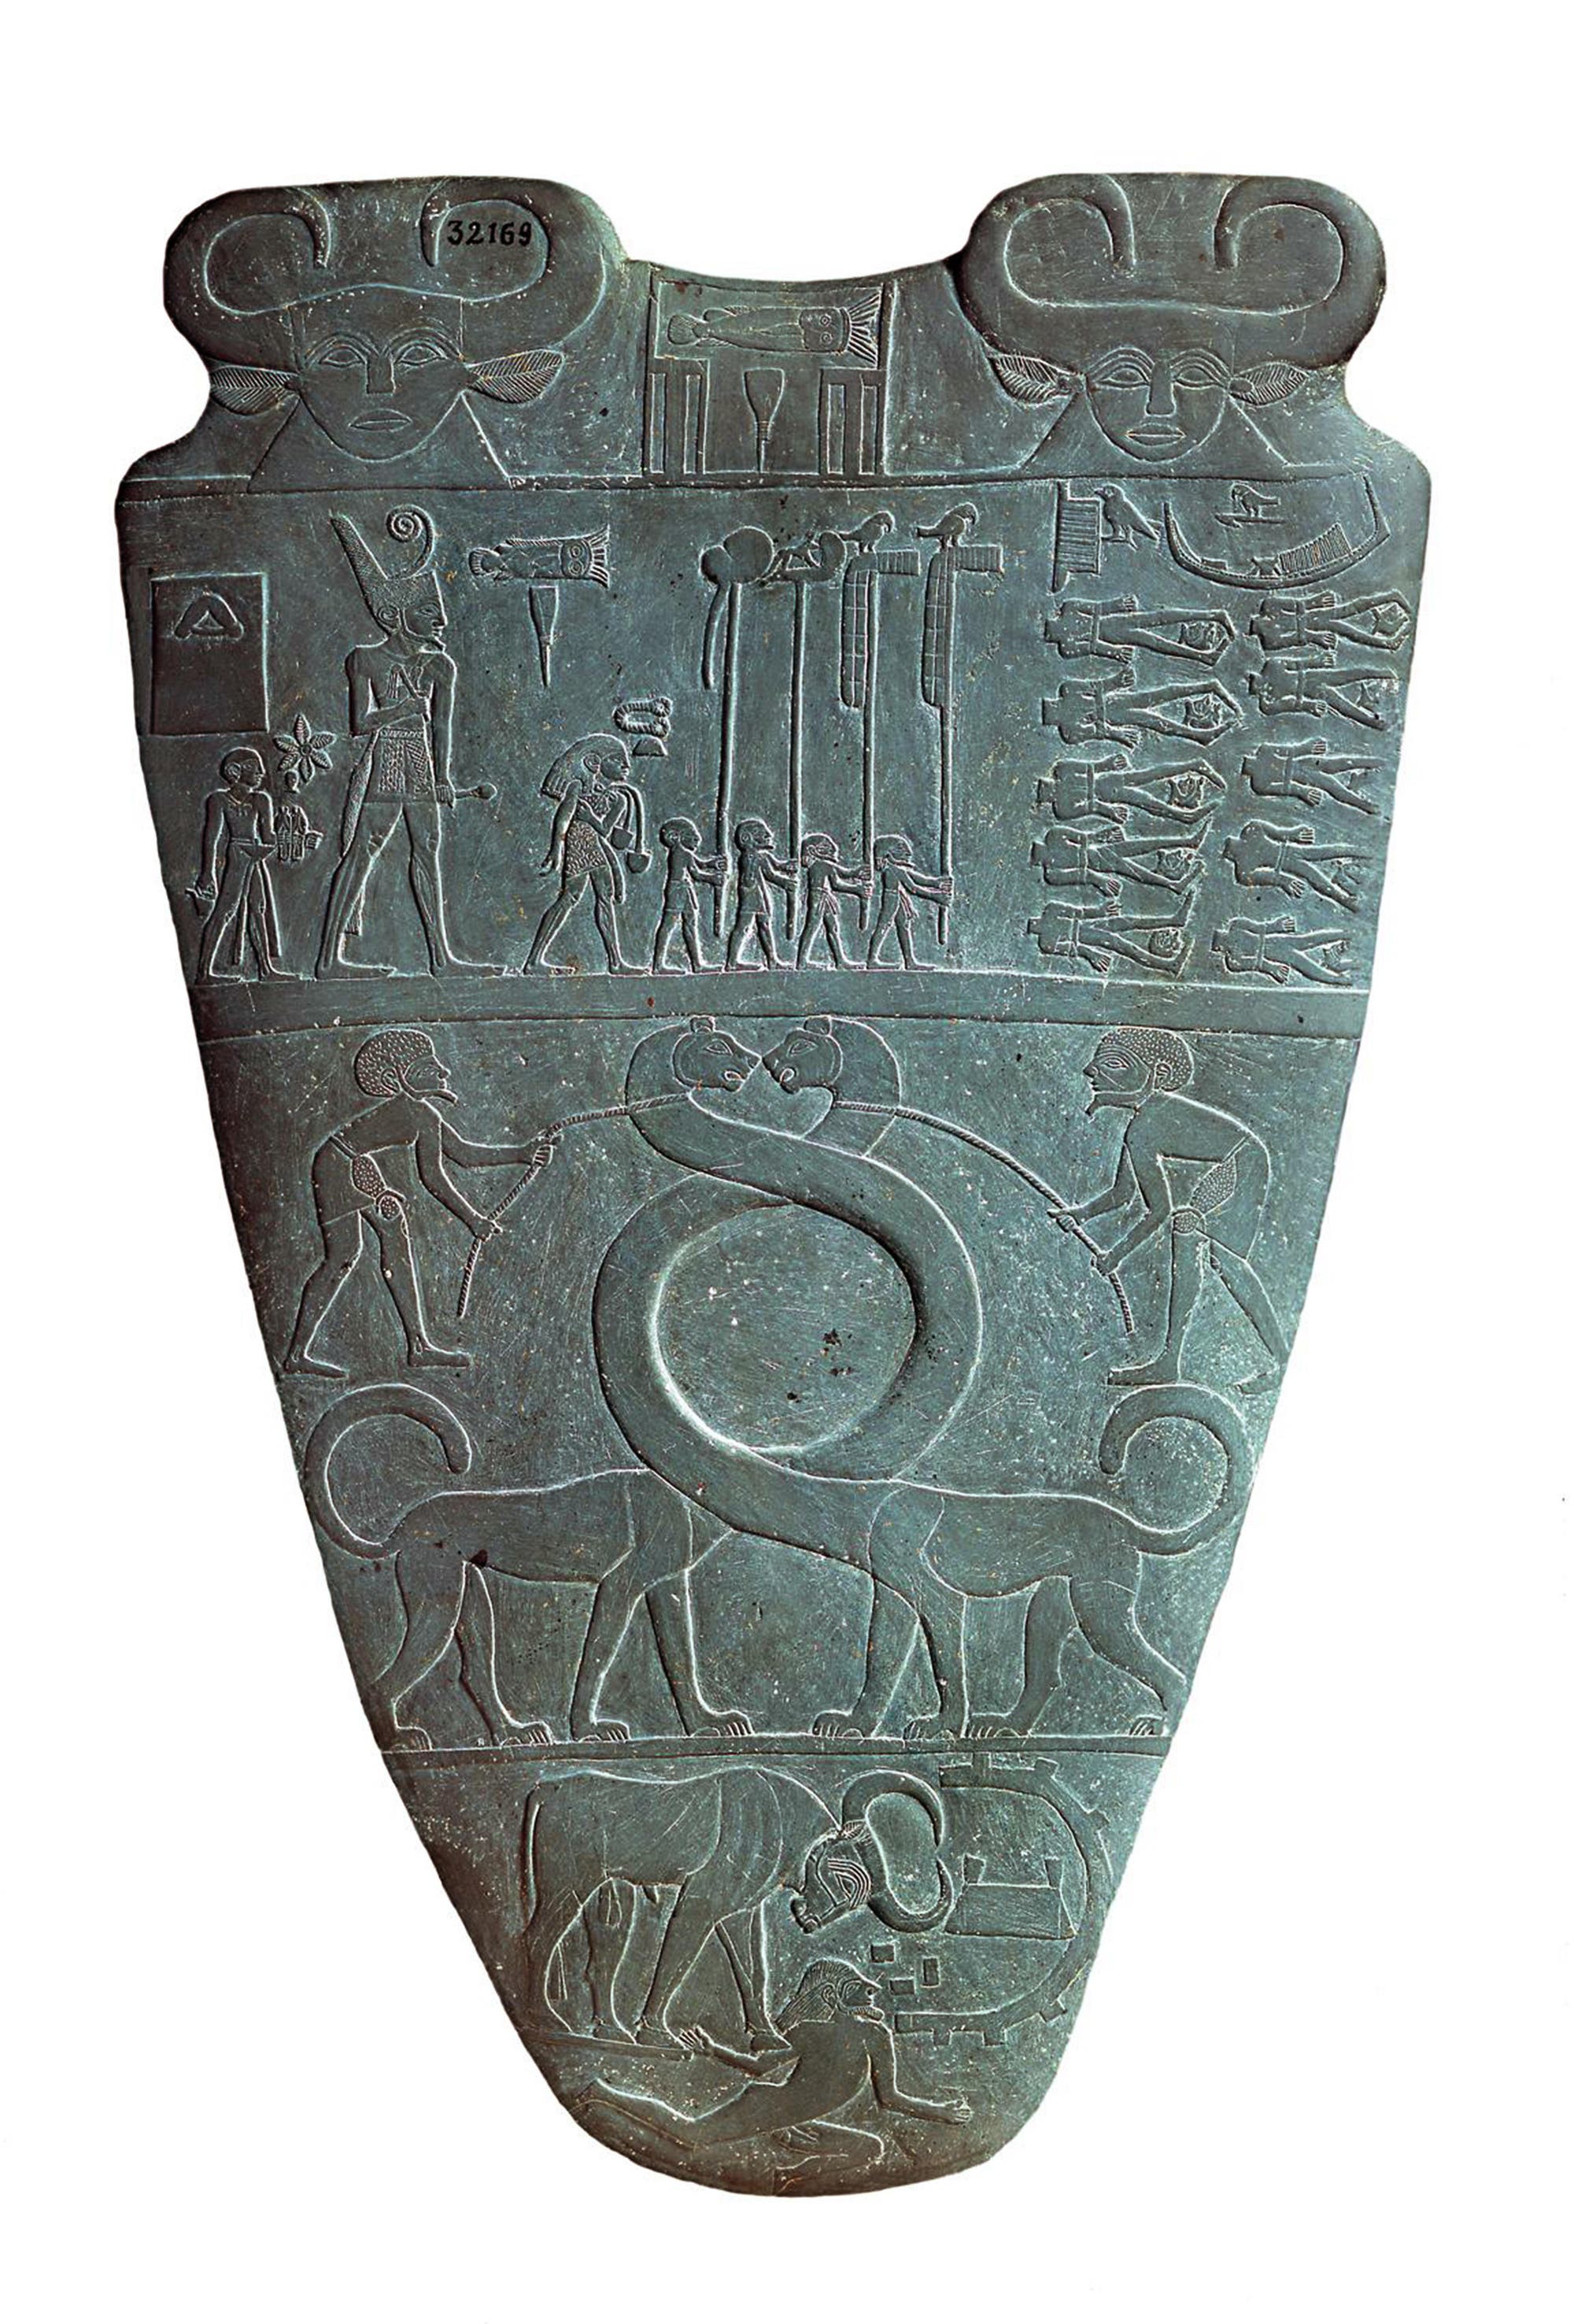 Wie der Name am oberen Griff des zirka 5000 Jahre alten Schieferobjekts belegt, handeln die Bilder von Pharao Narmer.